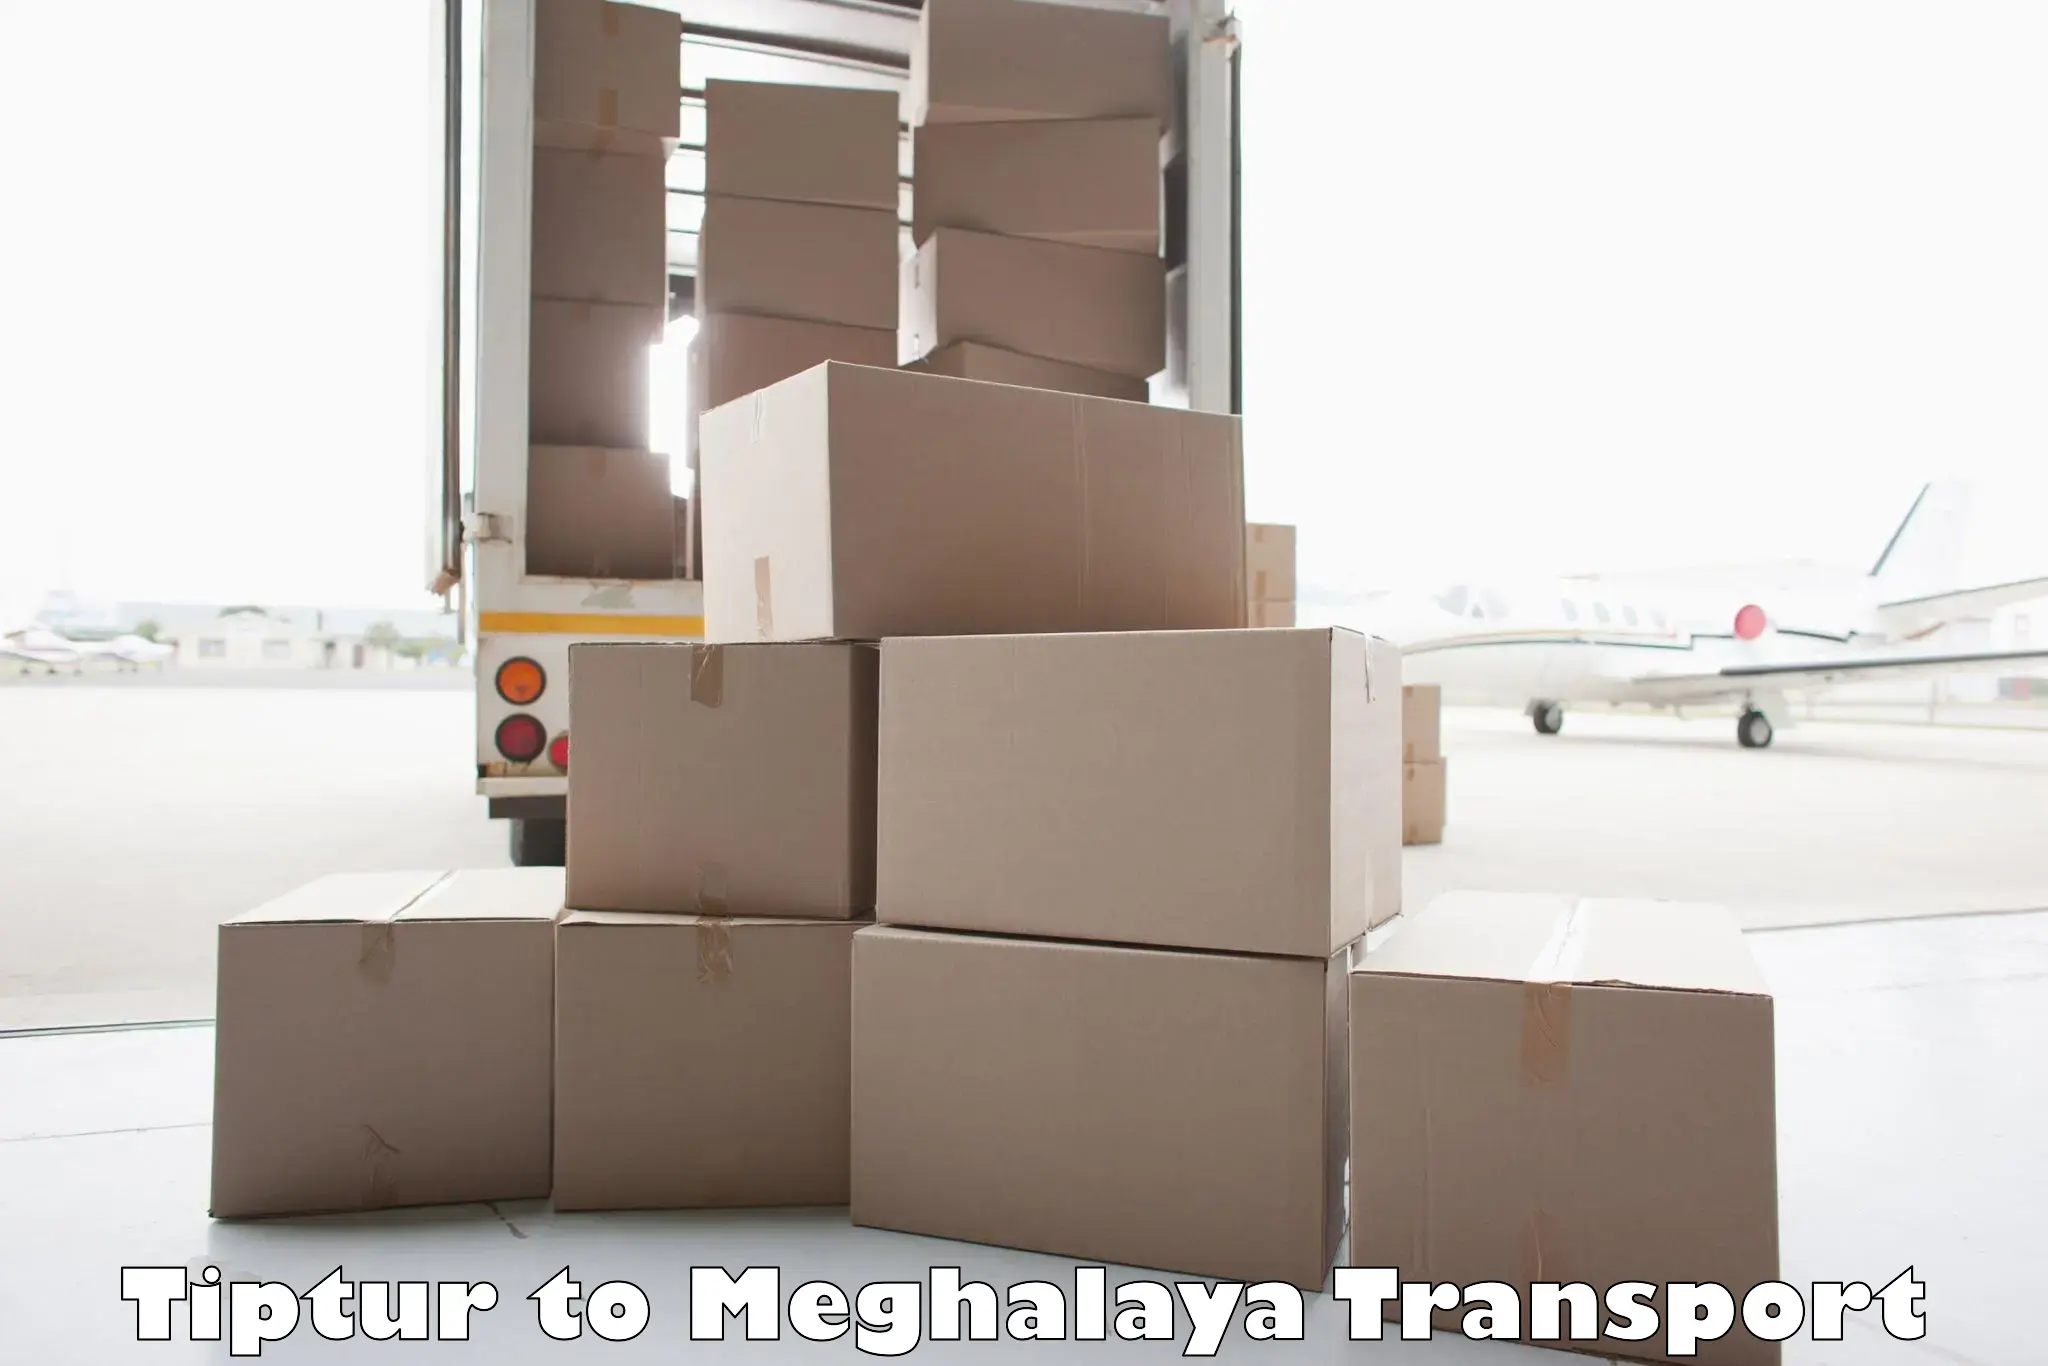 Container transport service Tiptur to Jaintia Hills